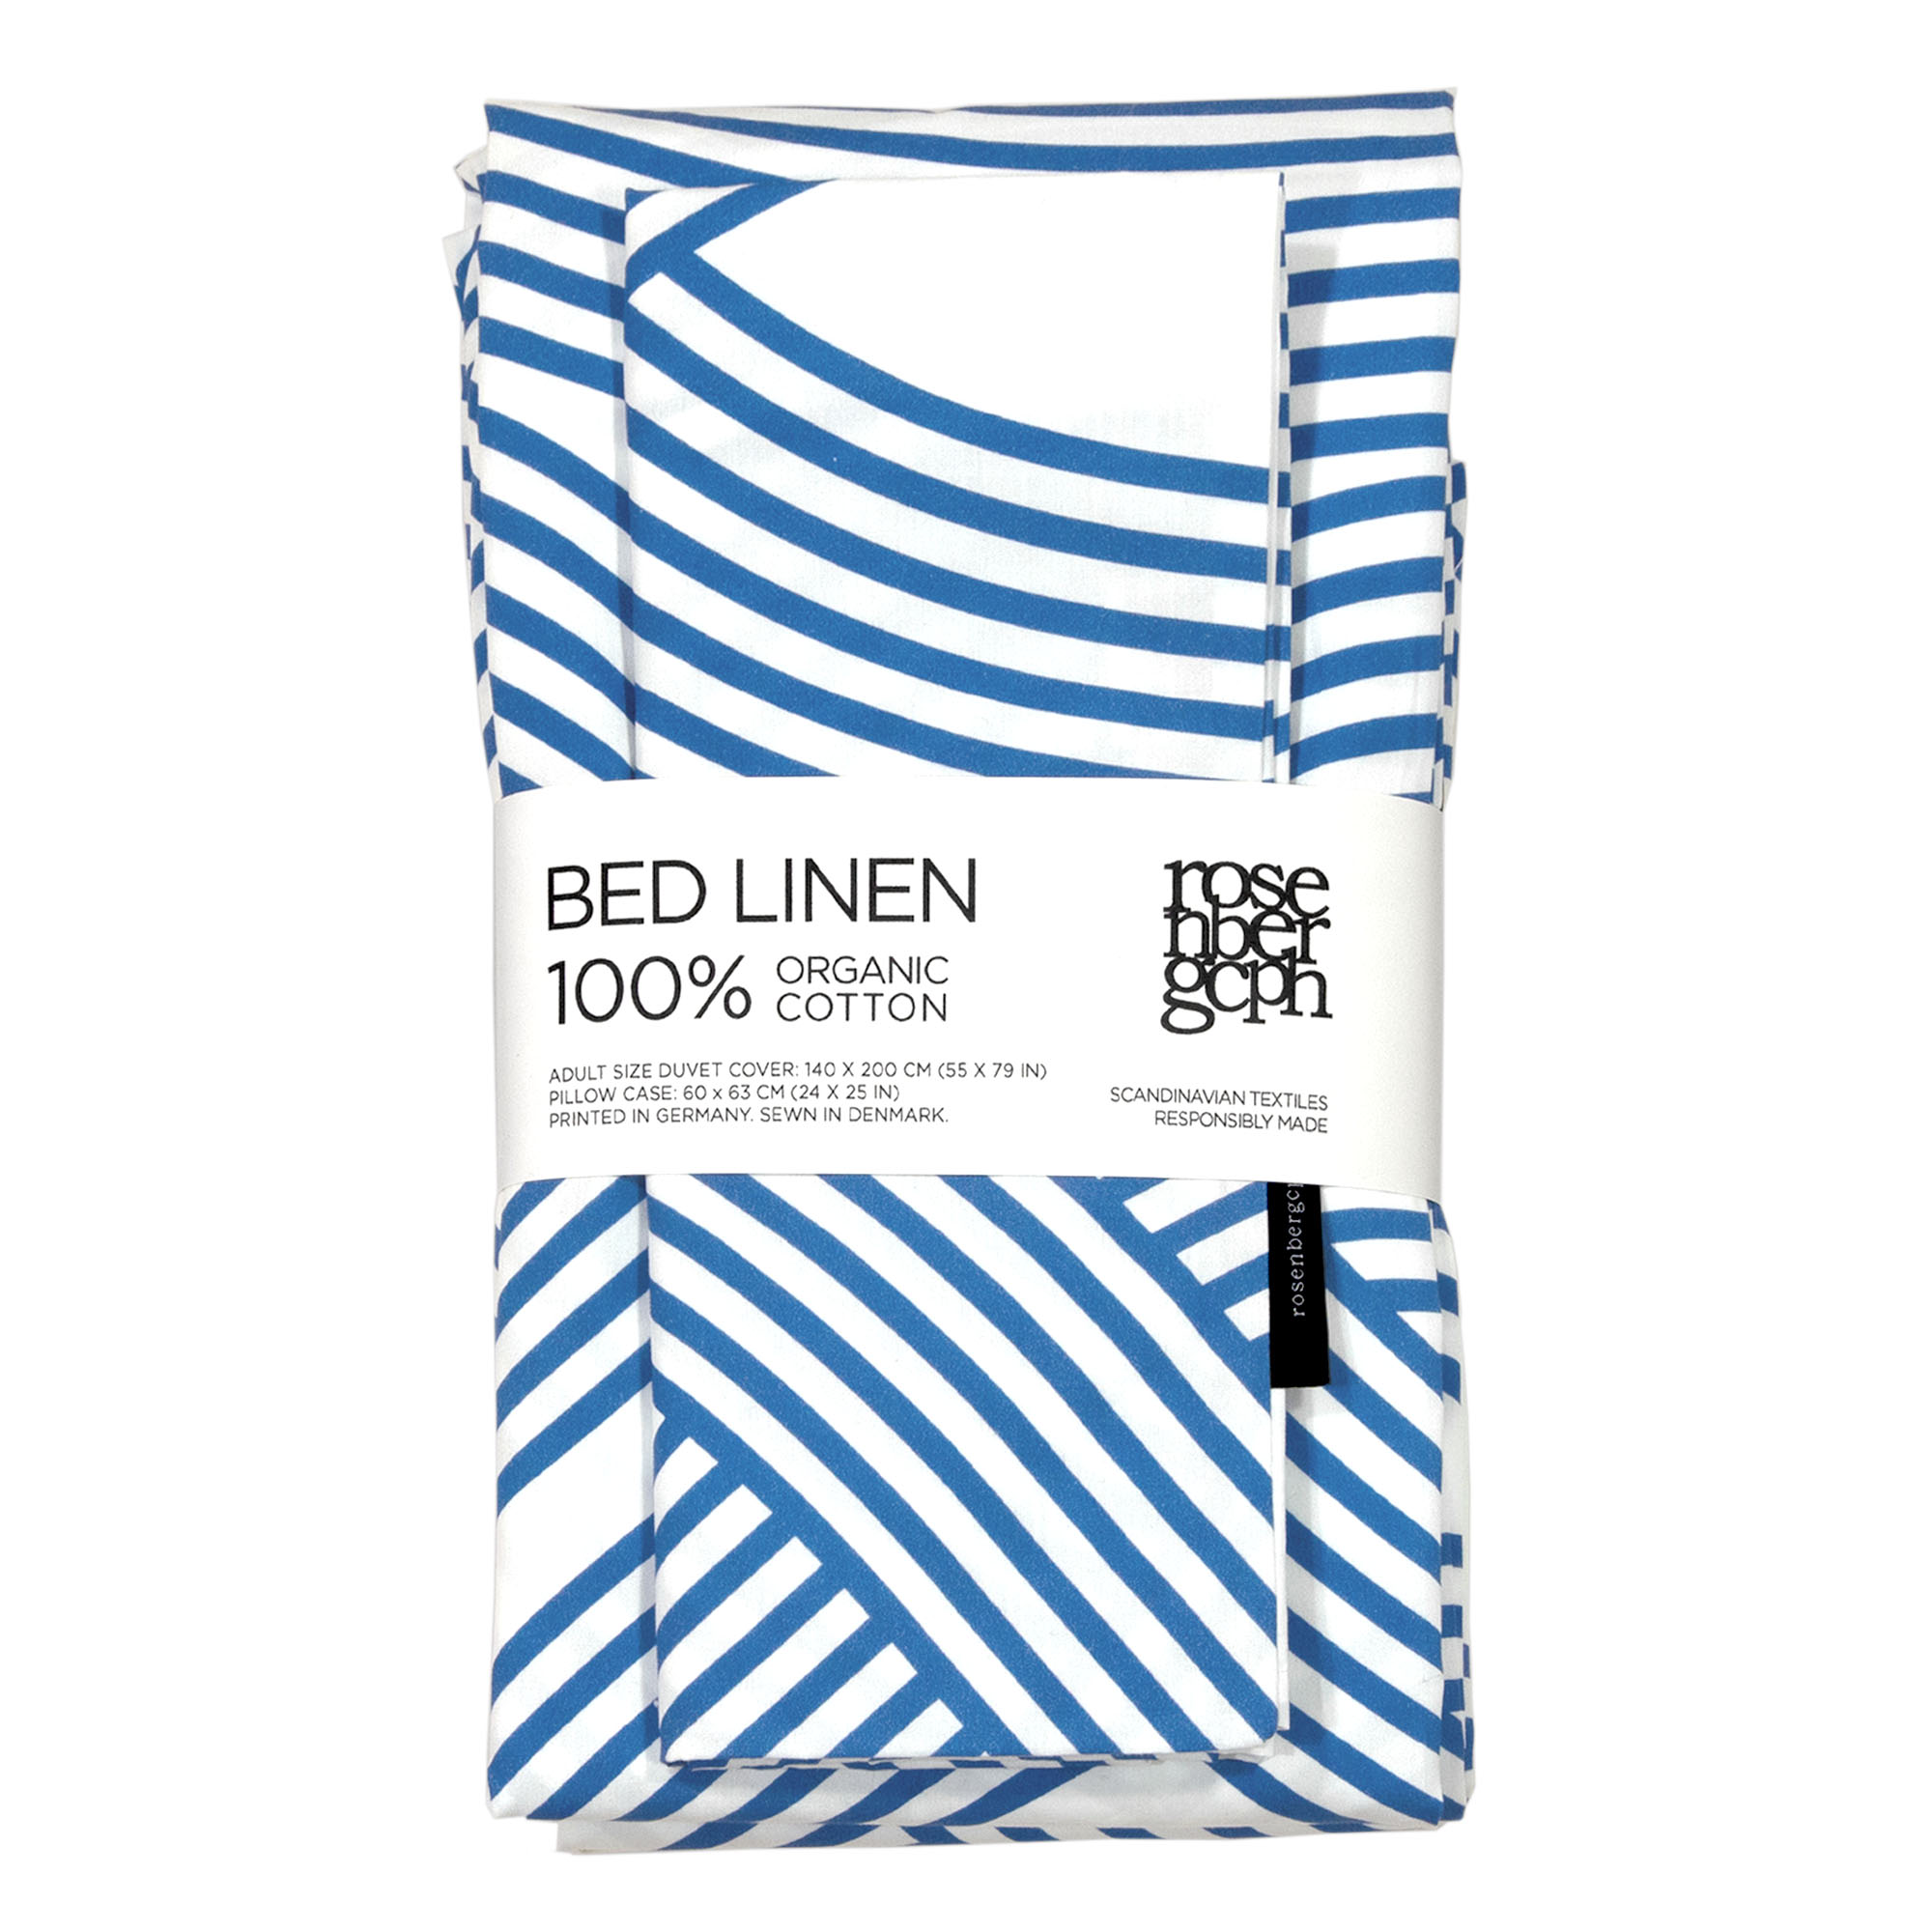 Havblåt sengetøj af økologisk bomuld, design af Anne Rosenberg, RosenbergCph